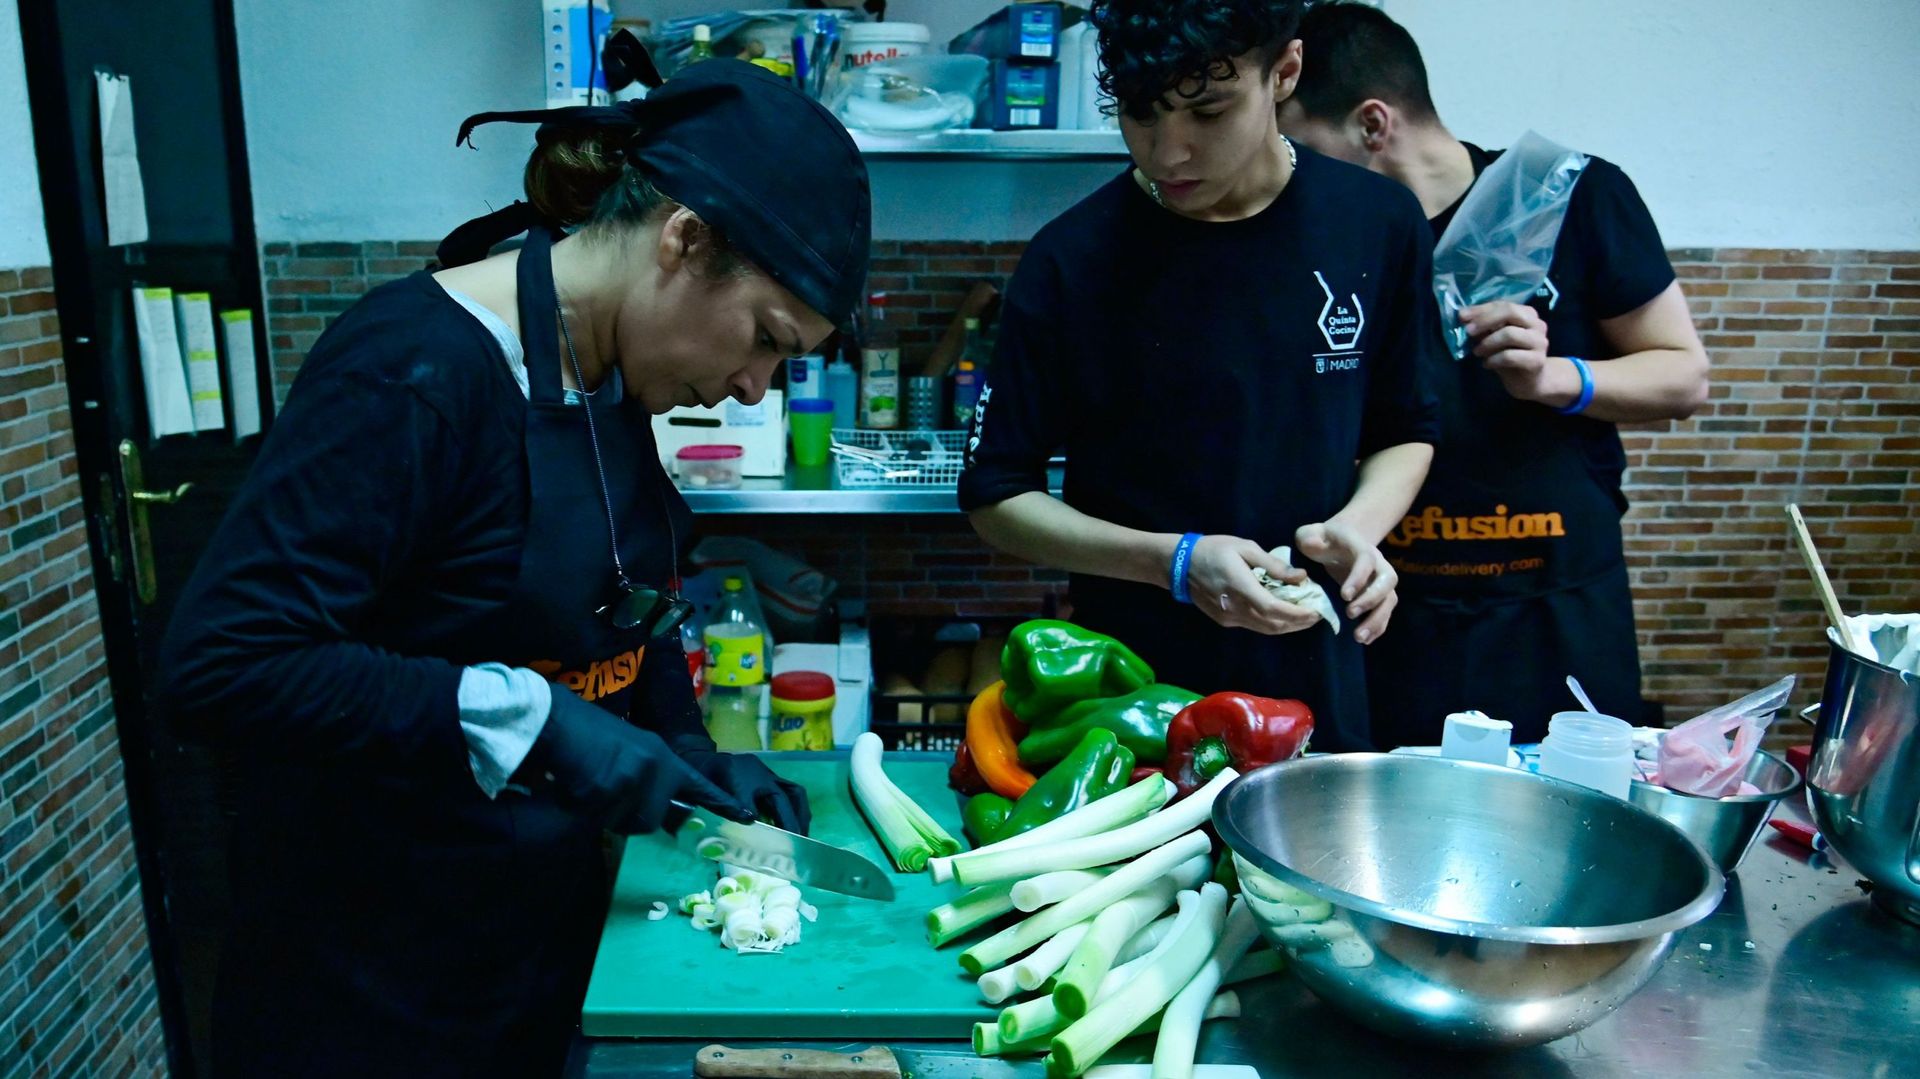 A Madrid, des réfugiés chefs d’un restaurant